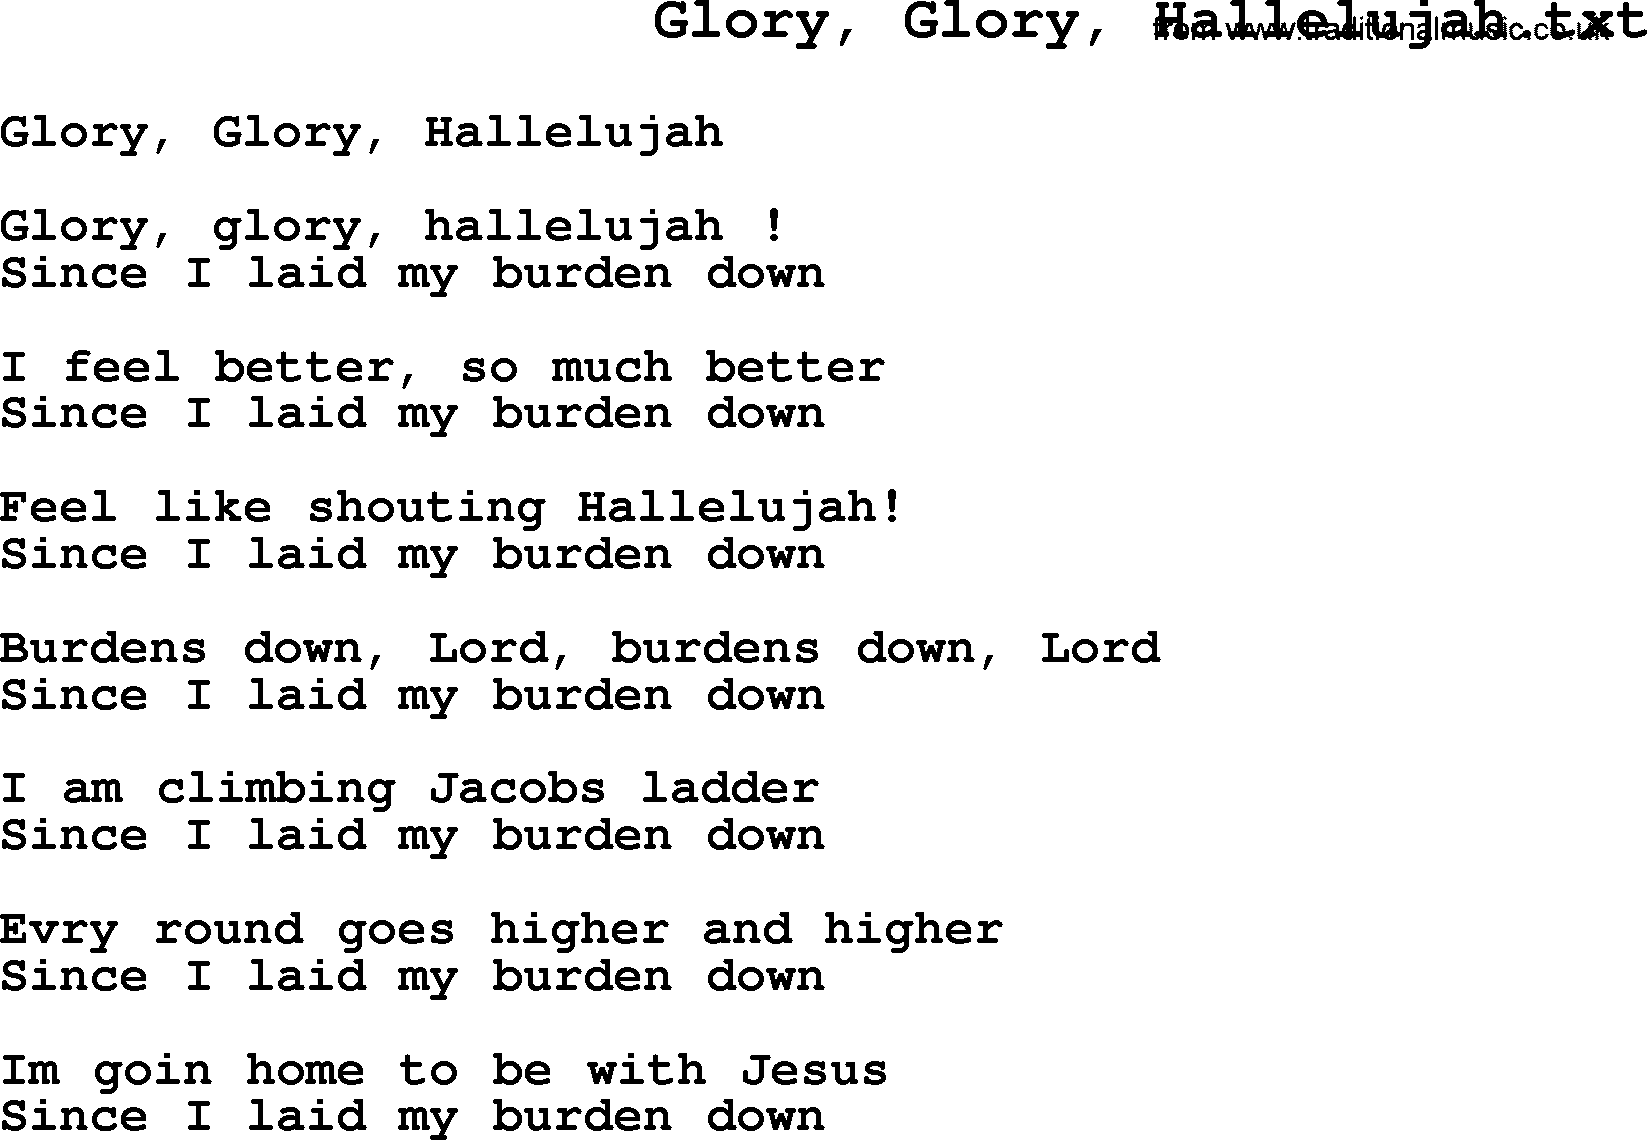 Negro Spiritual Song Lyrics for Glory, Glory, Hallelujah